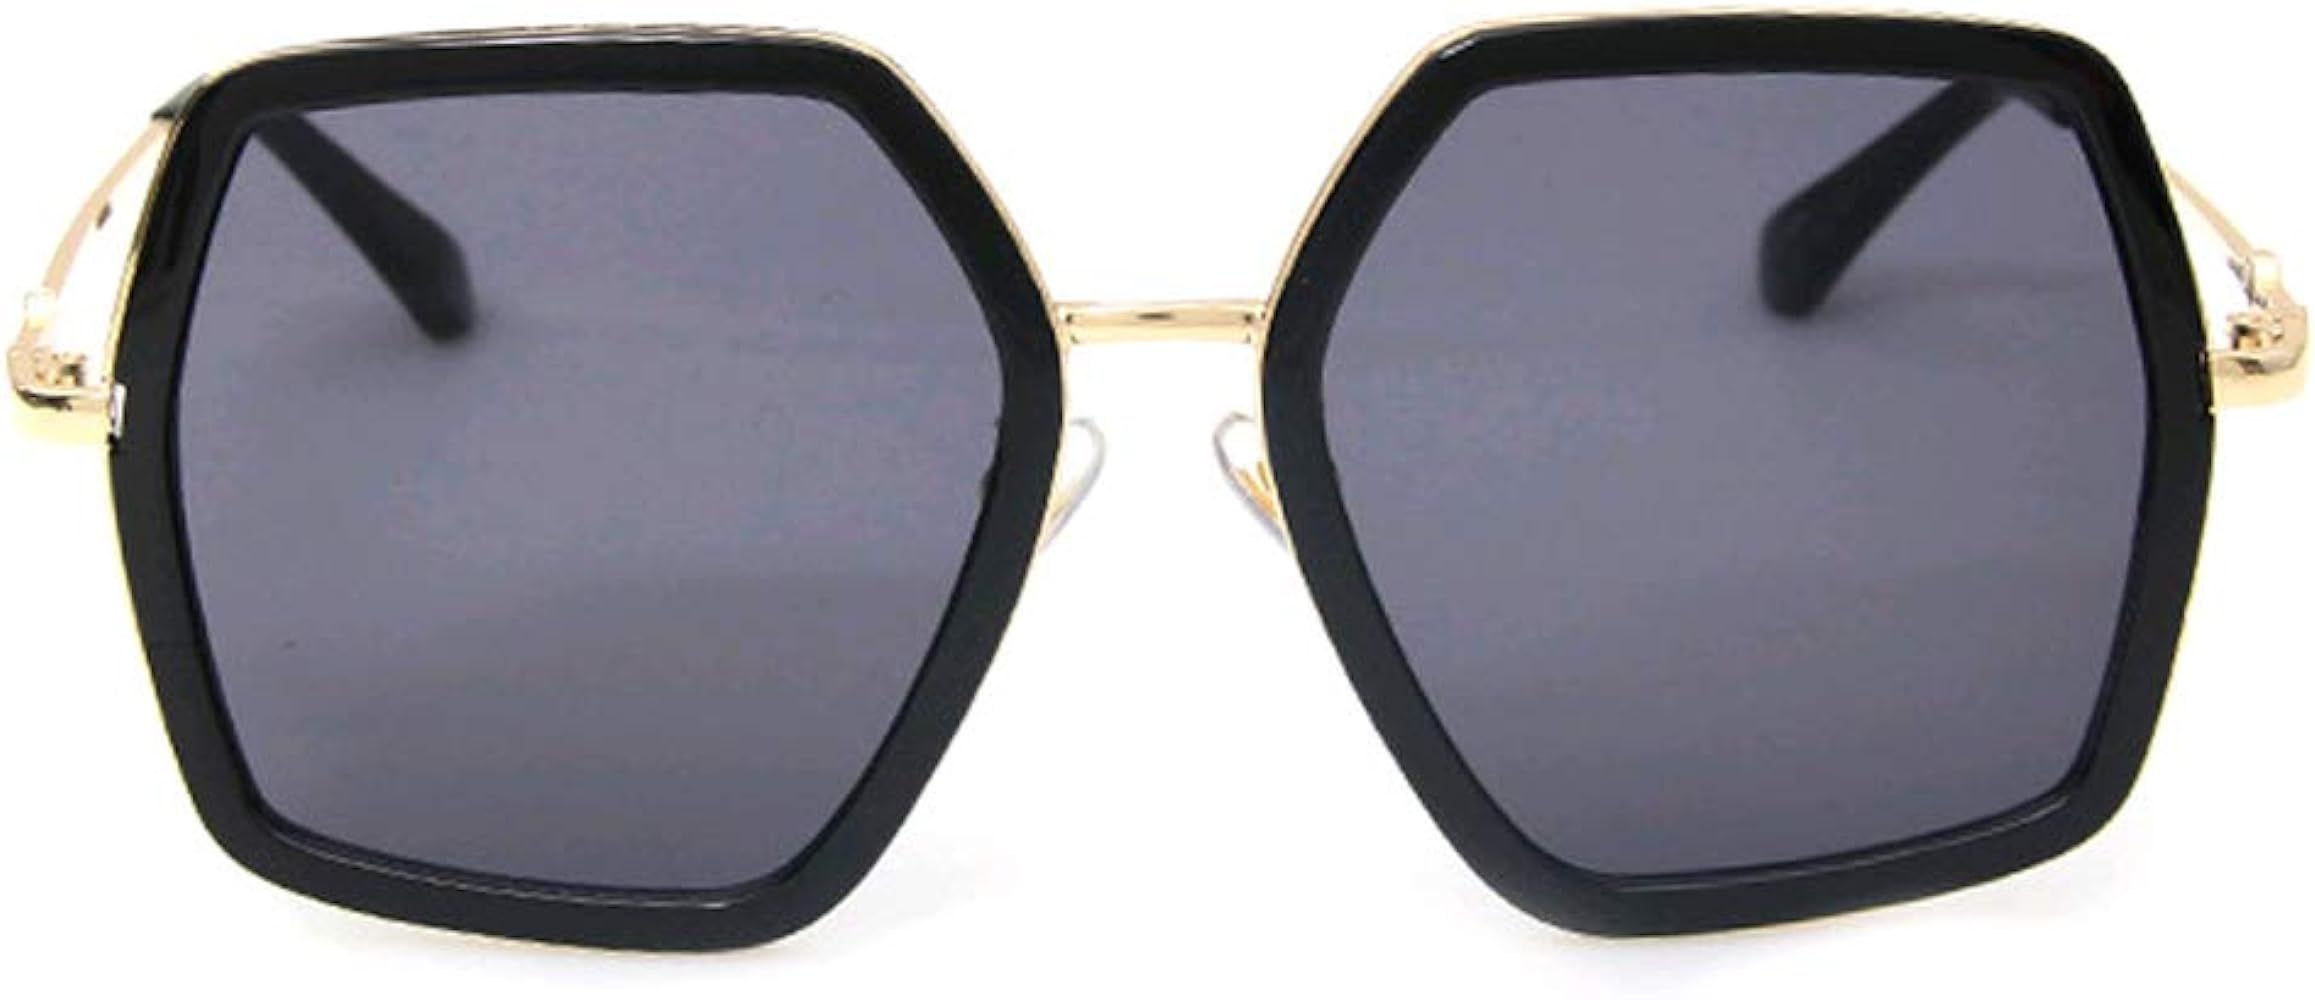 Oversized Square Sunglasses Women Vintage UV Protection Irregular Designer Shades | Amazon (US)